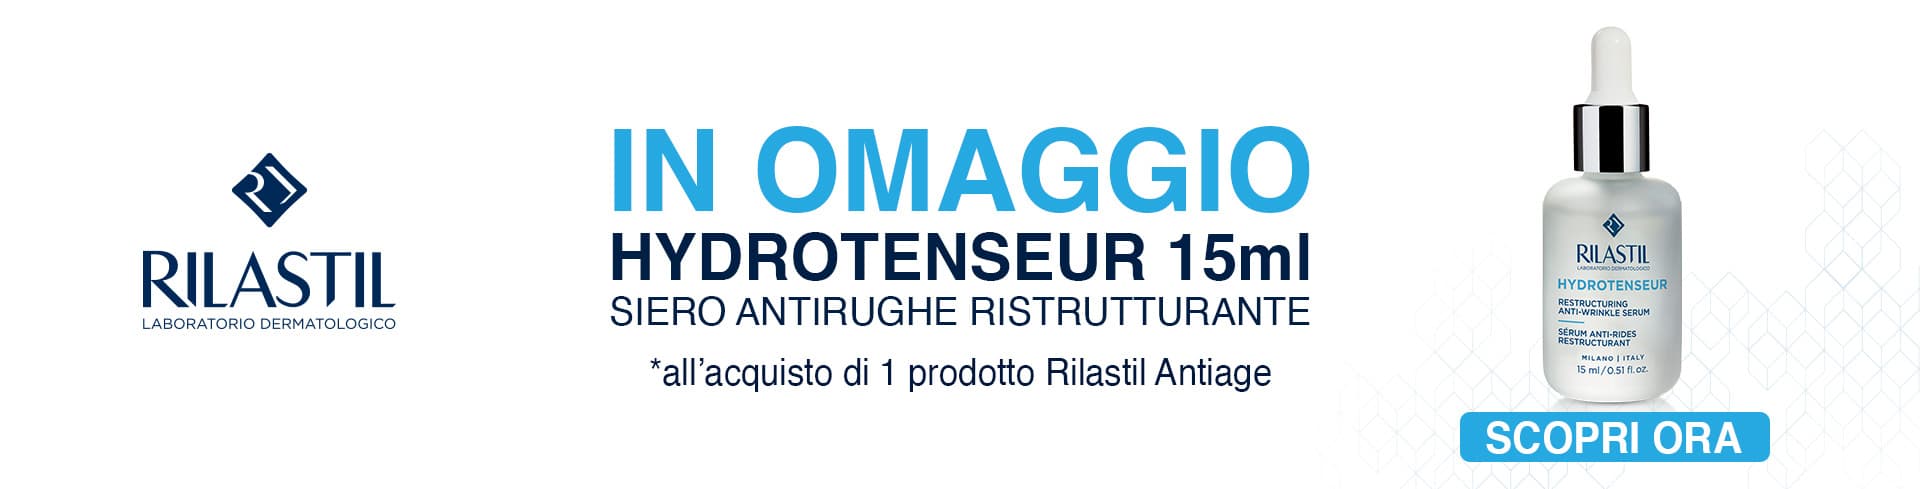 Rilastil antirughe promo hydrotenseur 15ml omaggio desktop